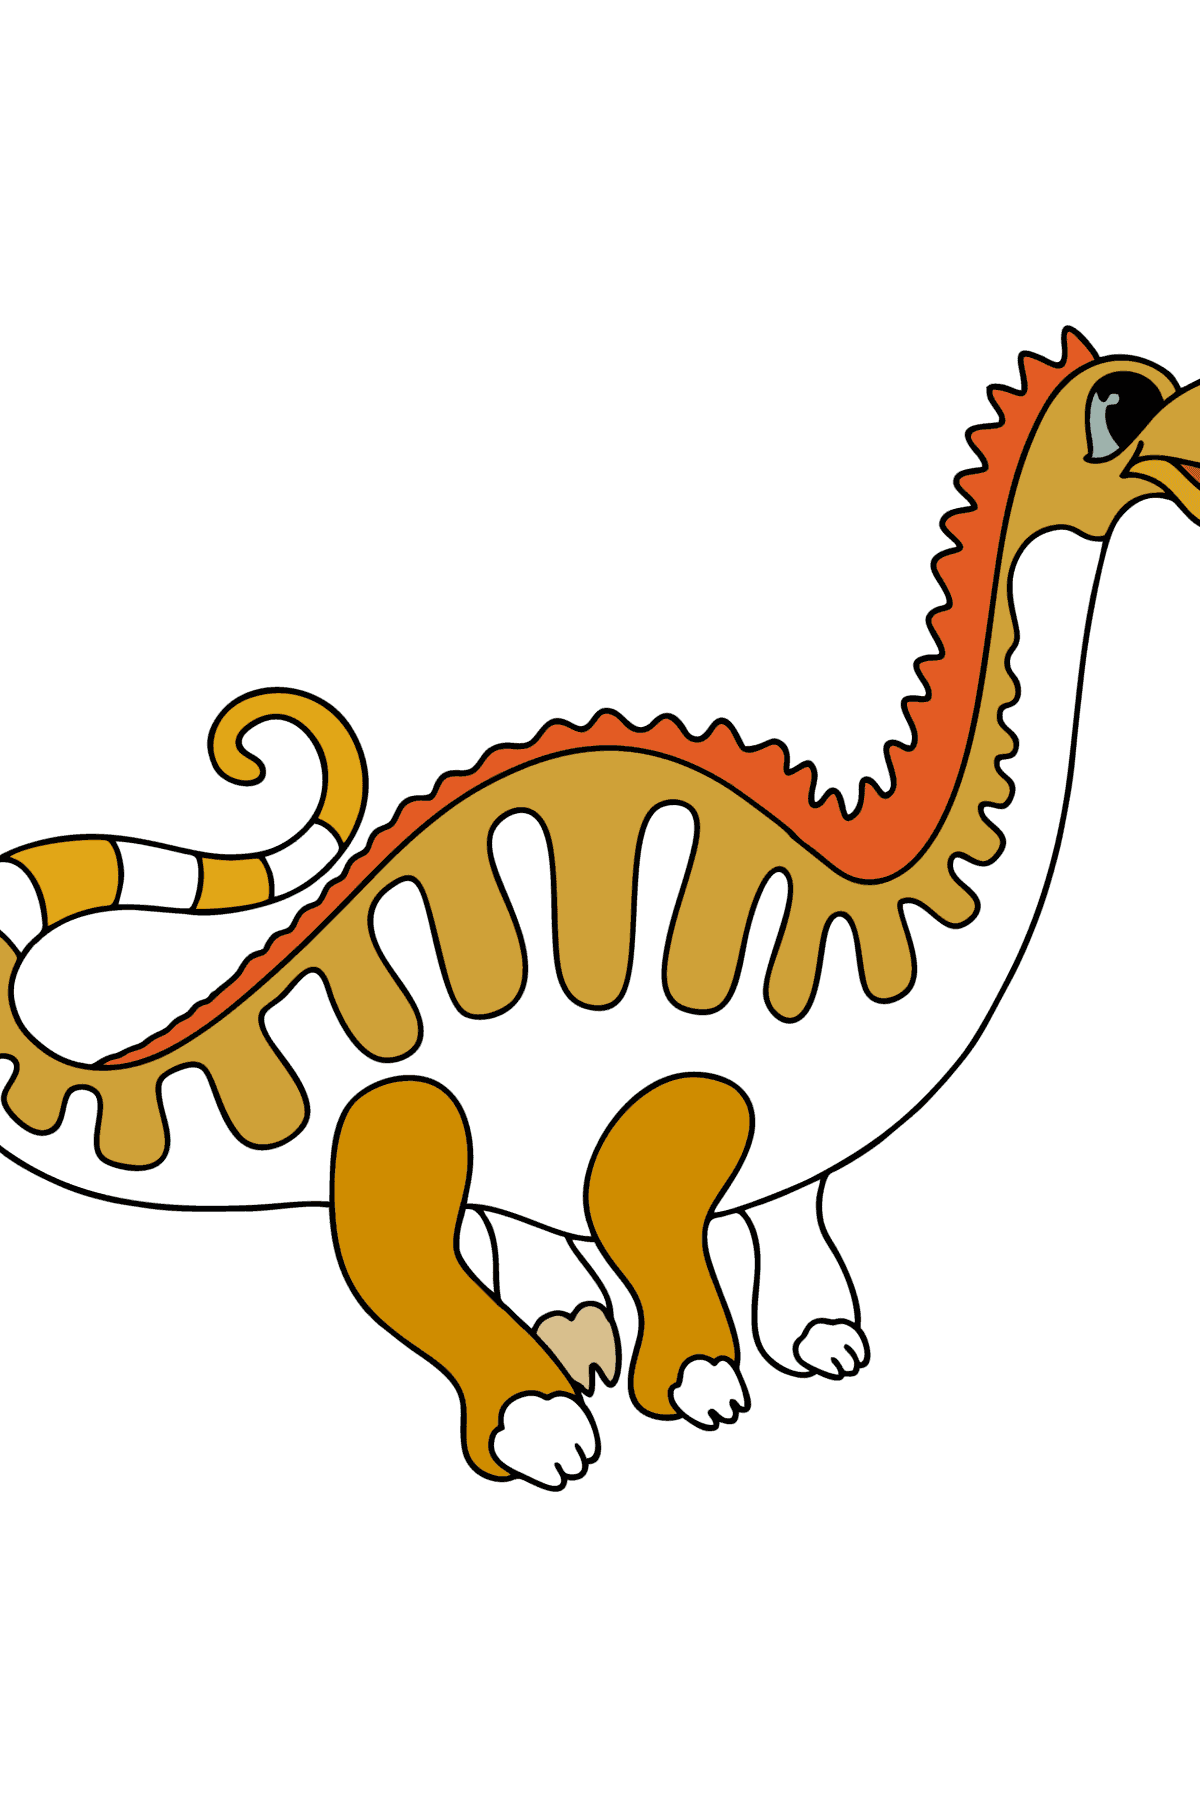 Tegning til fargelegging apatosaurus - Tegninger til fargelegging for barn